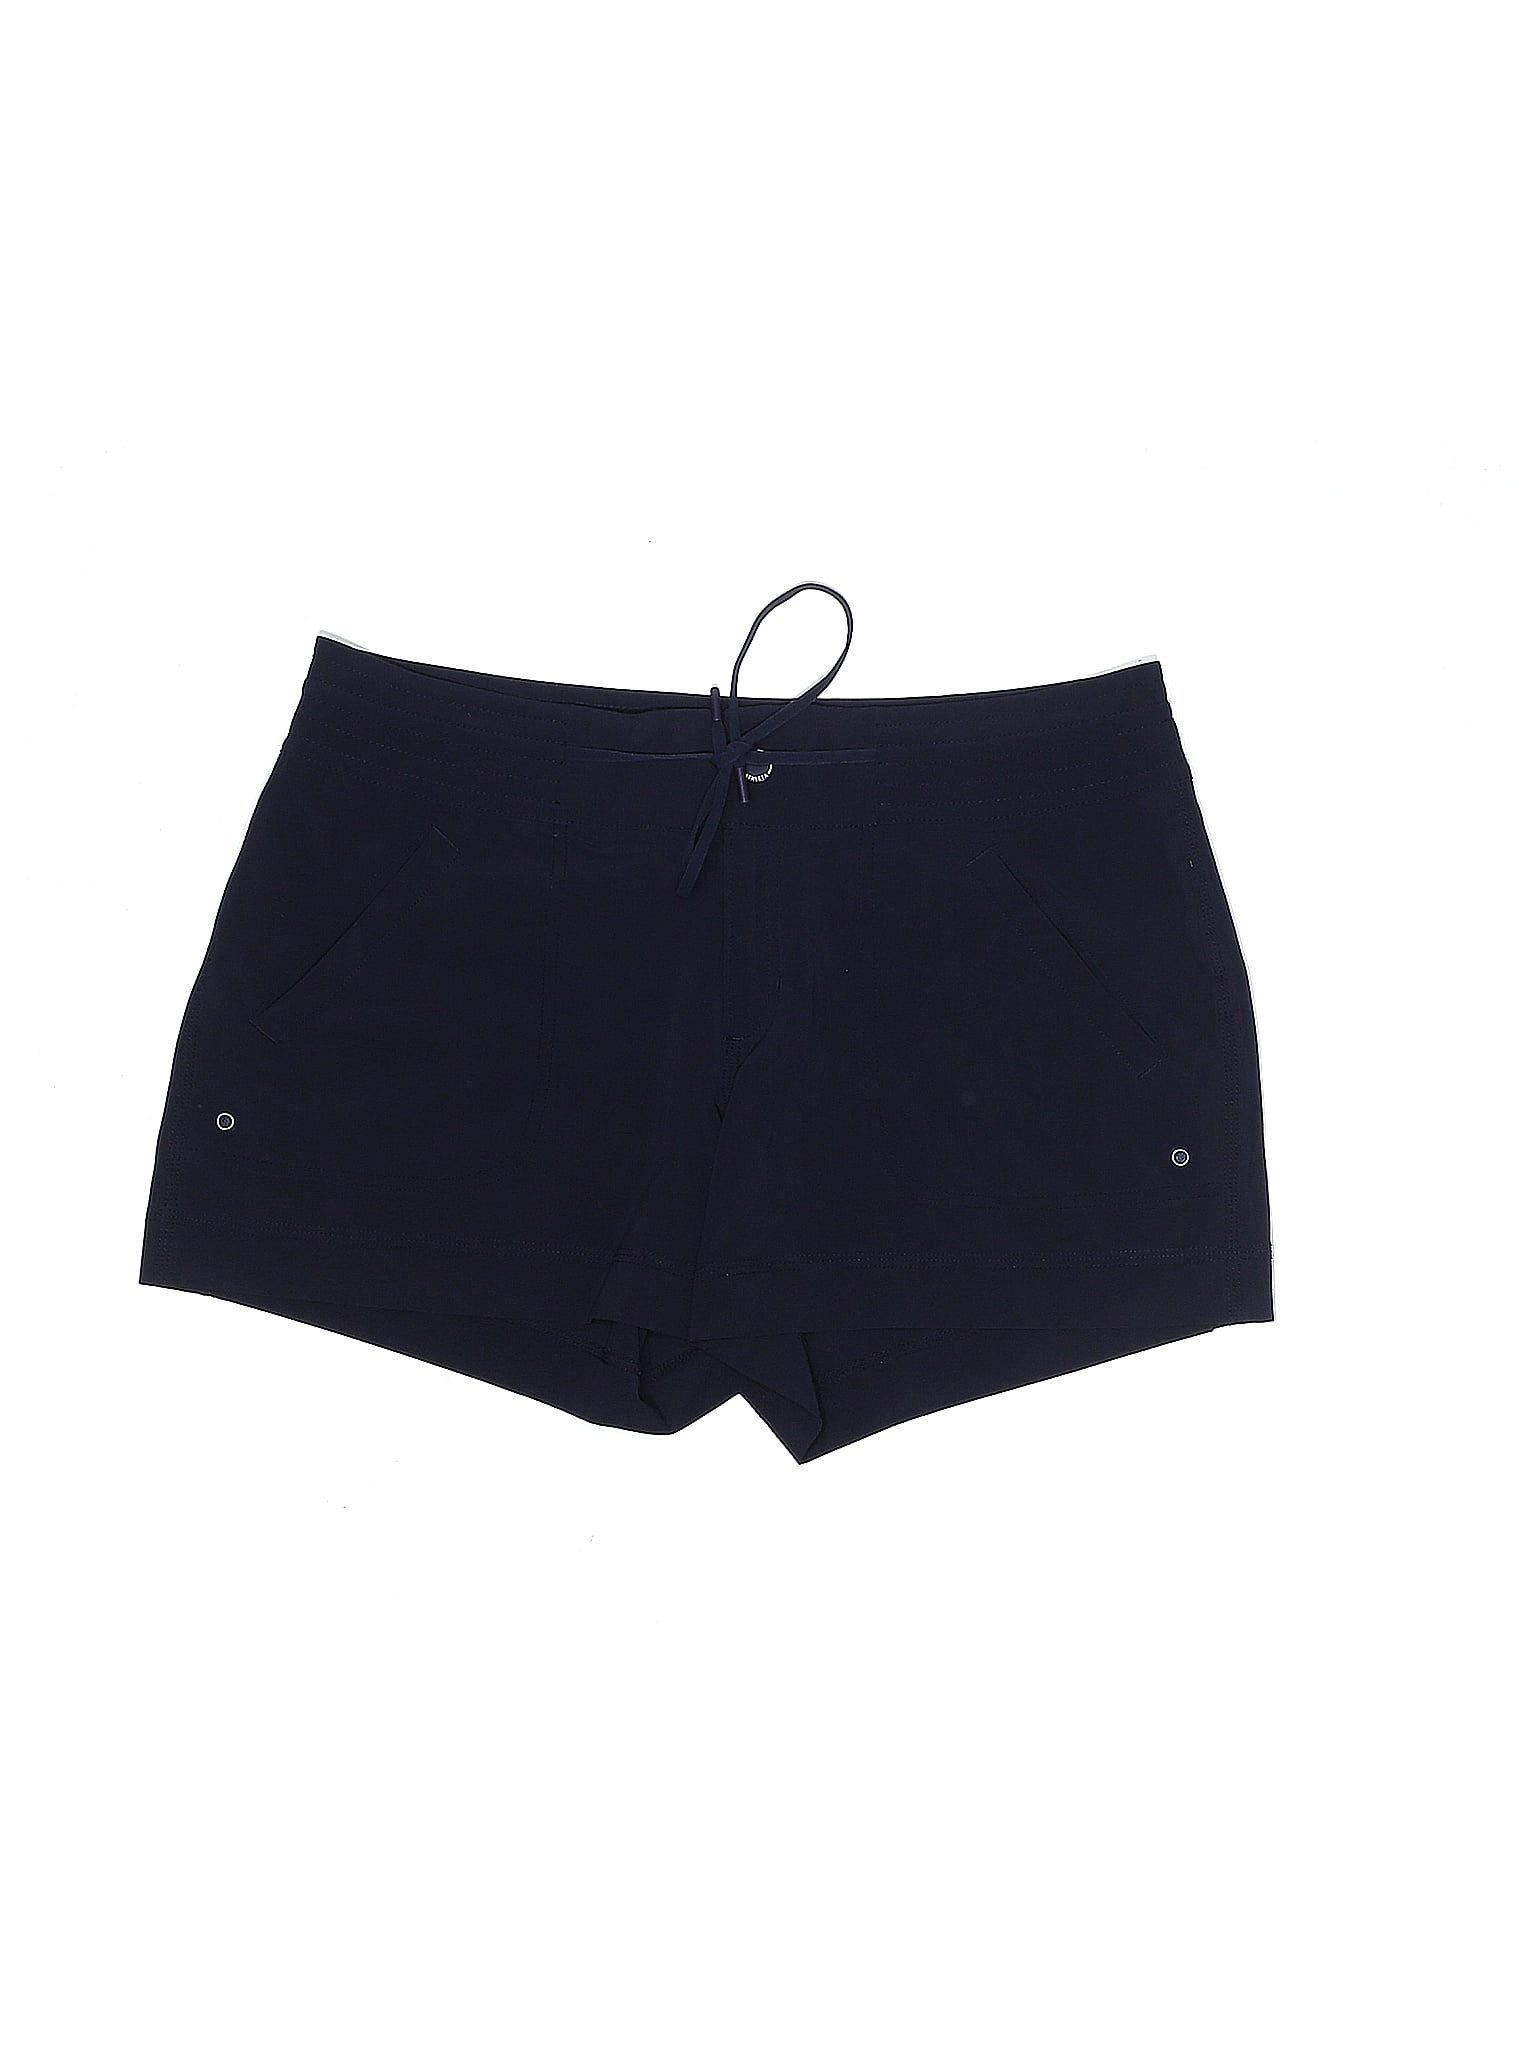 Athleta Blue Athletic Shorts Size 8 - 50% off | thredUP